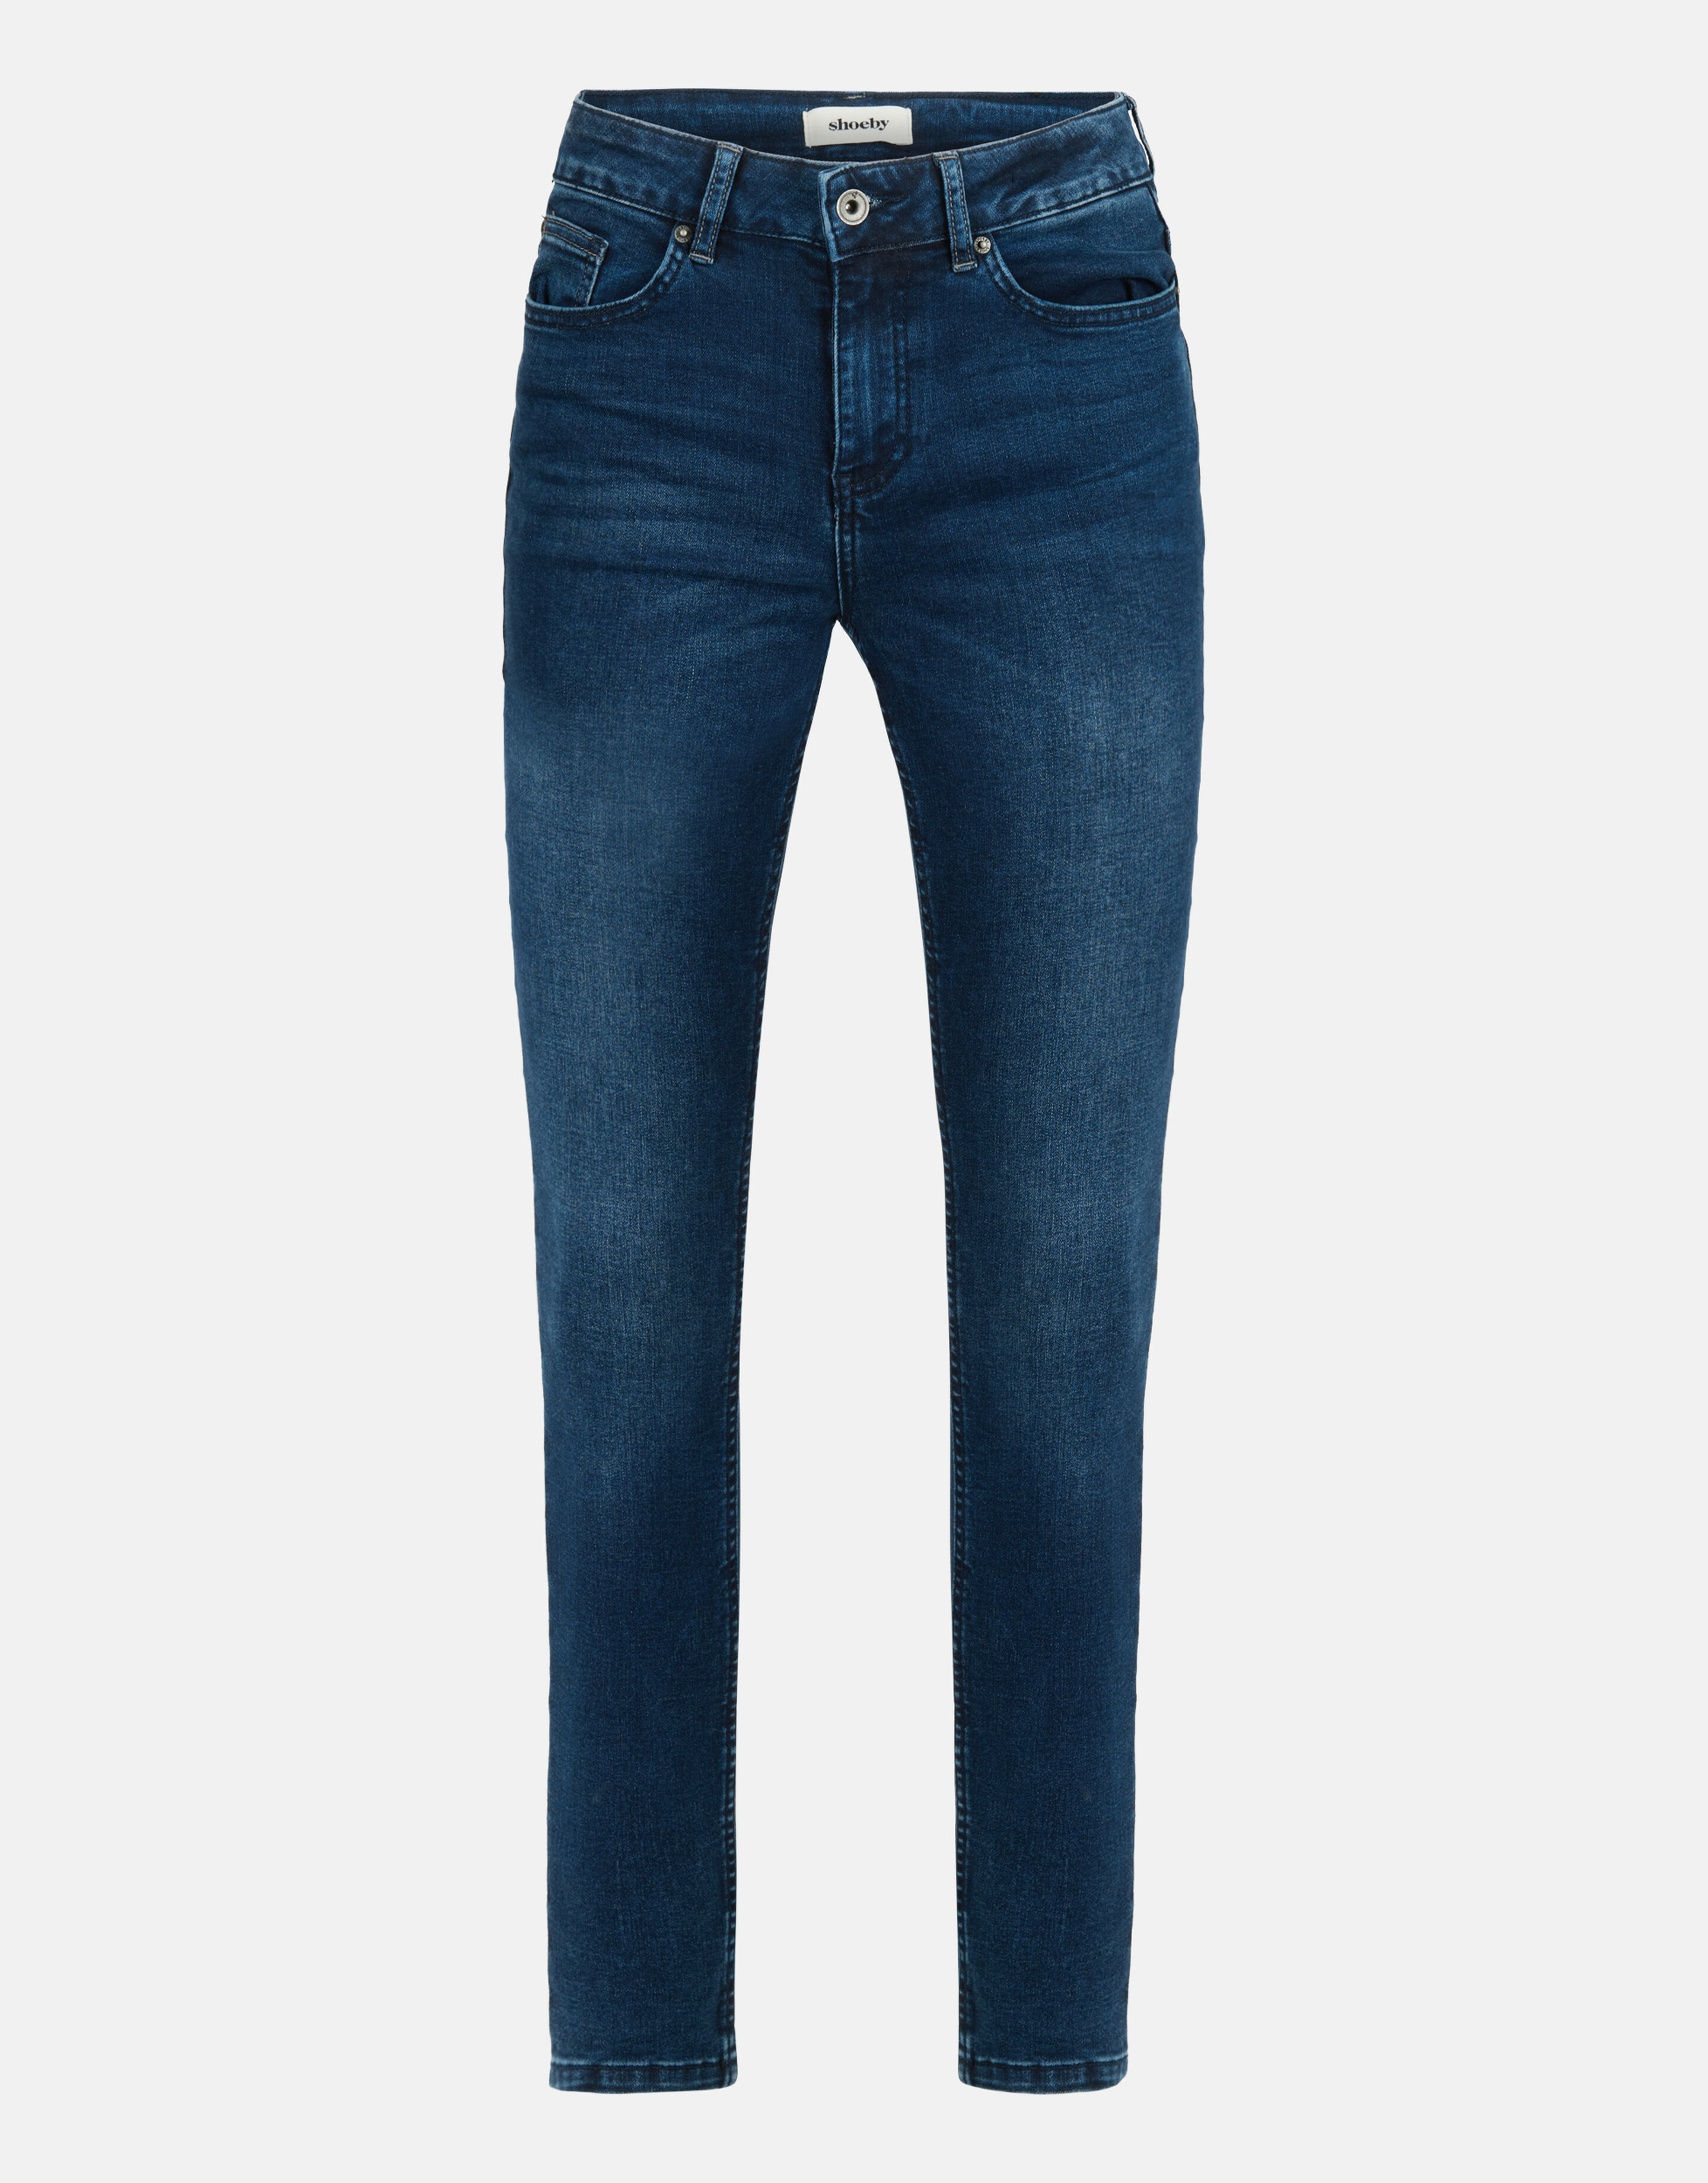 Skinny Jeans Donkerblauw L32 SHOEBY WOMEN